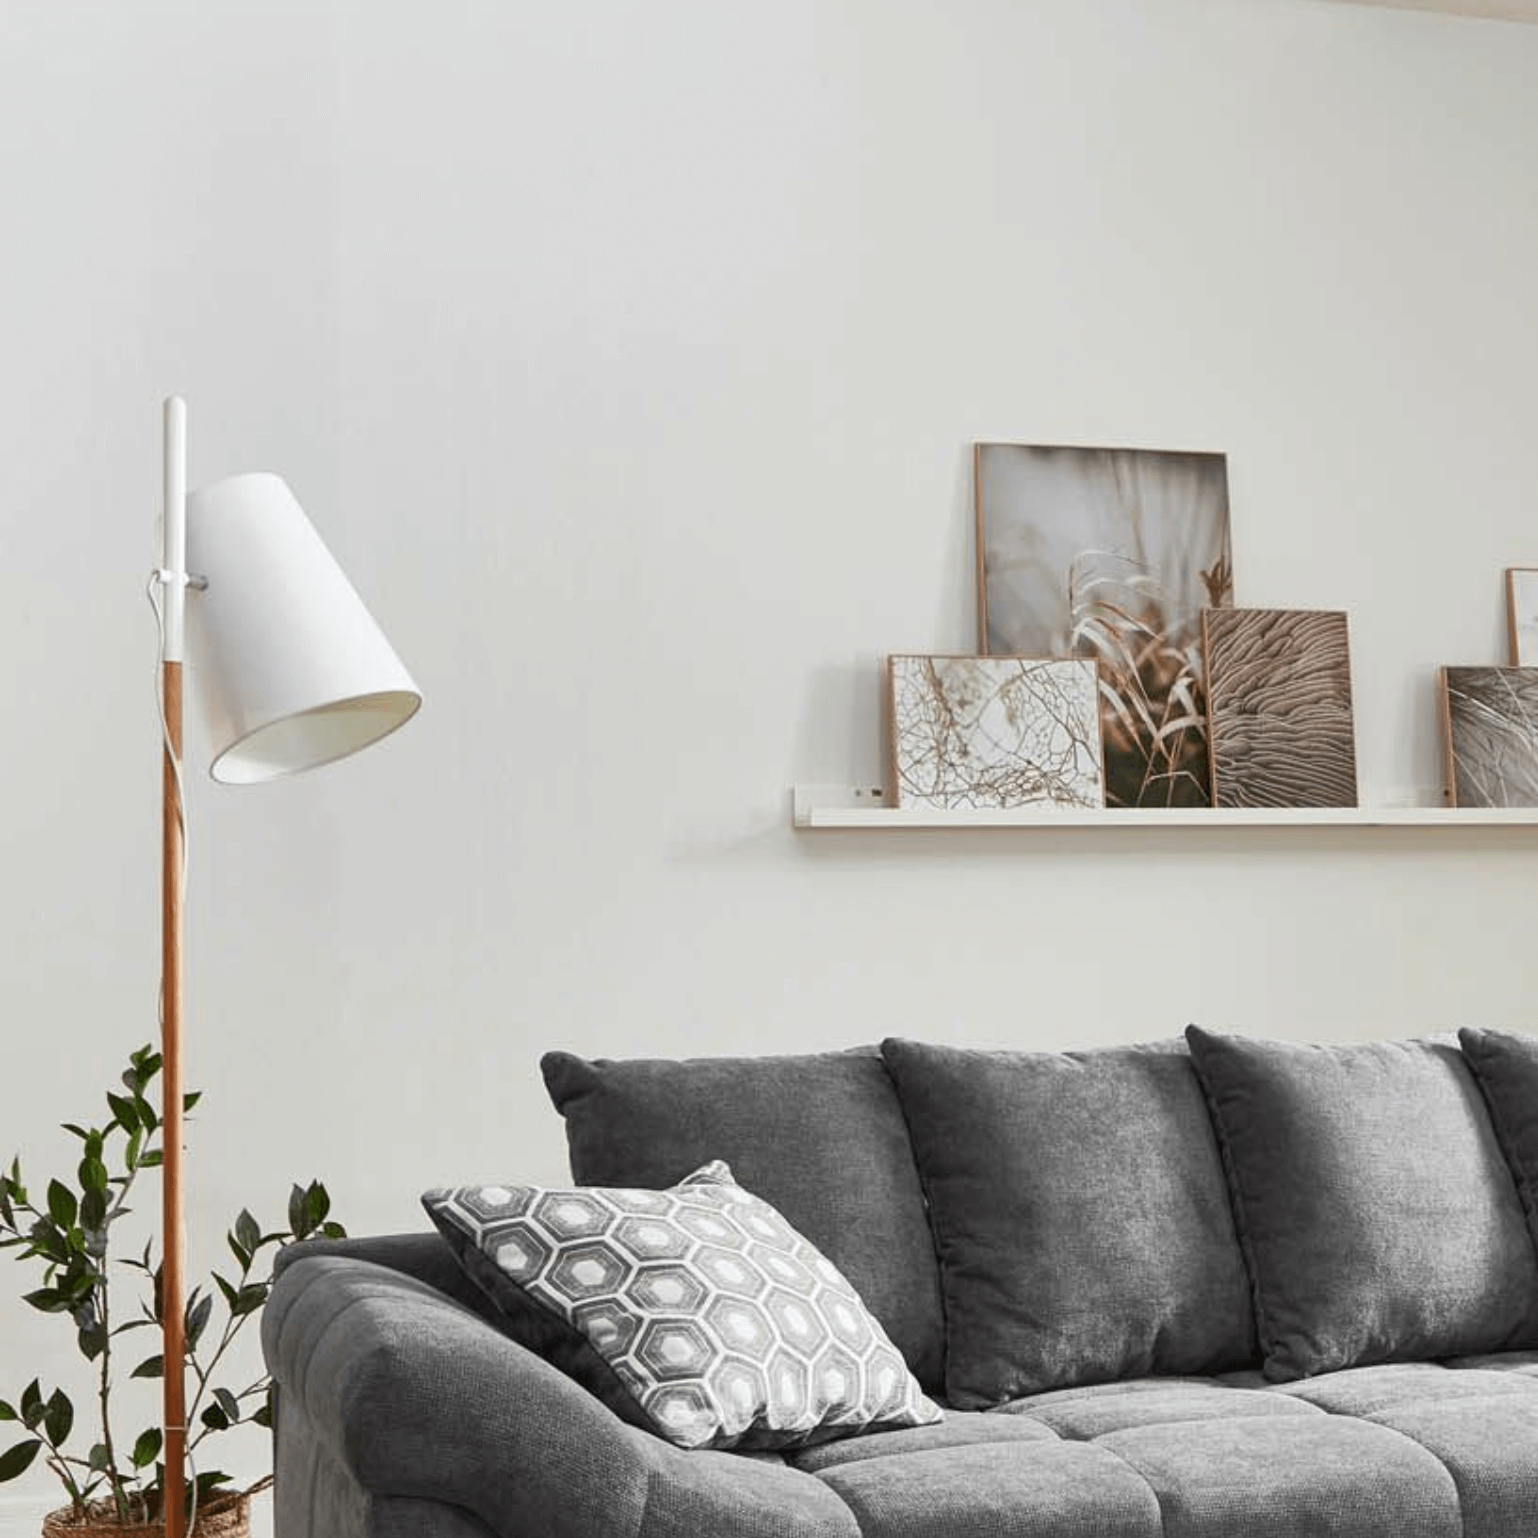 „Moderne weiße Standleuchte für dein Wohnzimmer: Elegante Beleuchtung im skandinavischen Stil. Schaffe eine gemütliche Atmosphäre mit dieser stilvollen und funktionalen Leuchte.“